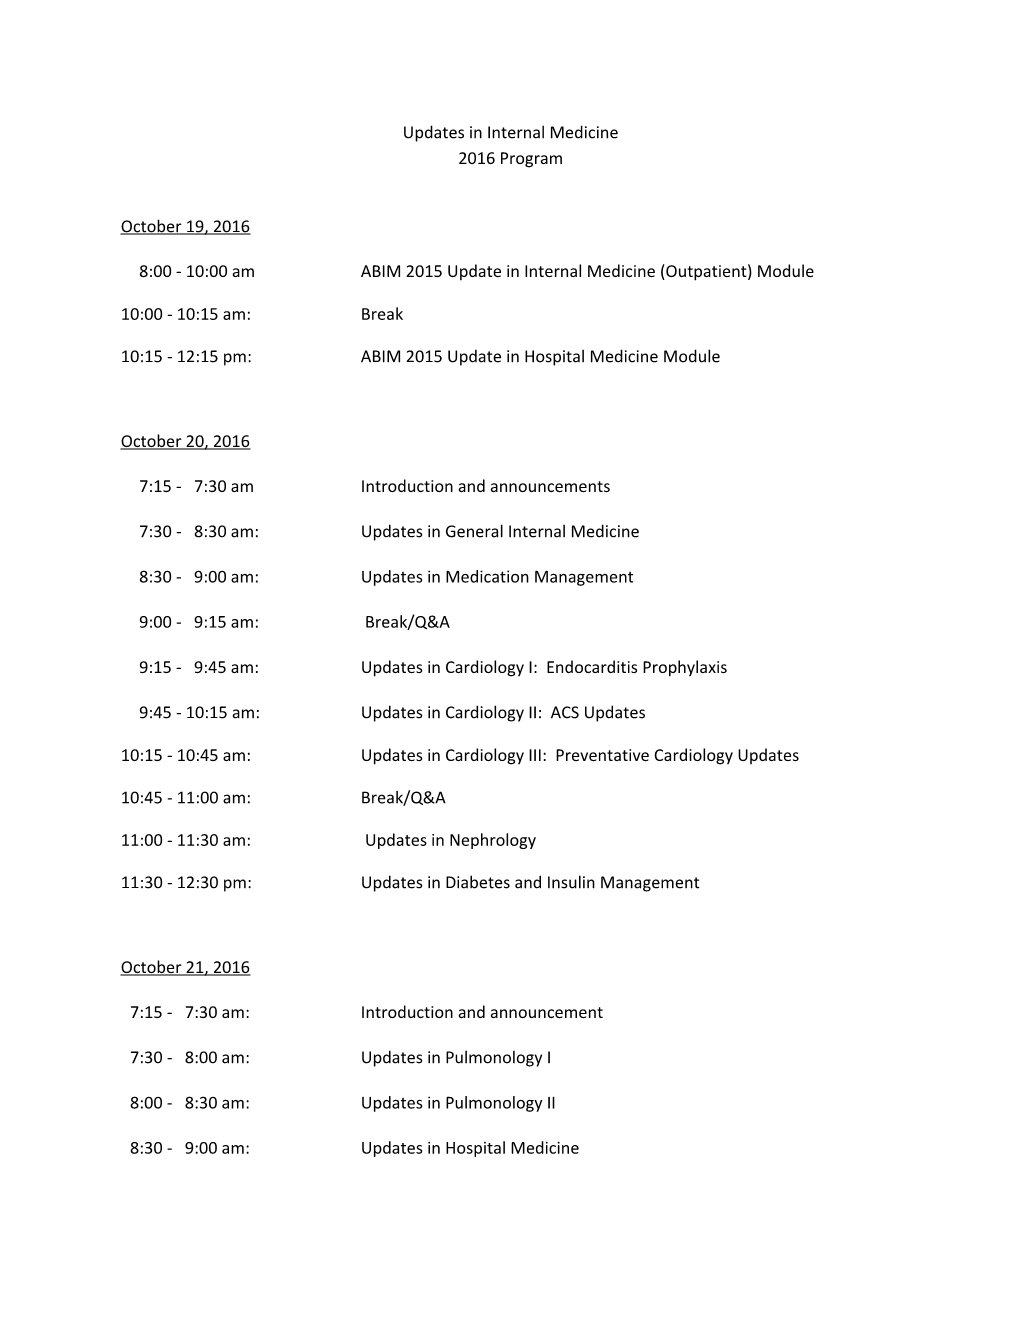 8:00 - 10:00 Am ABIM 2015 Update in Internal Medicine (Outpatient) Module